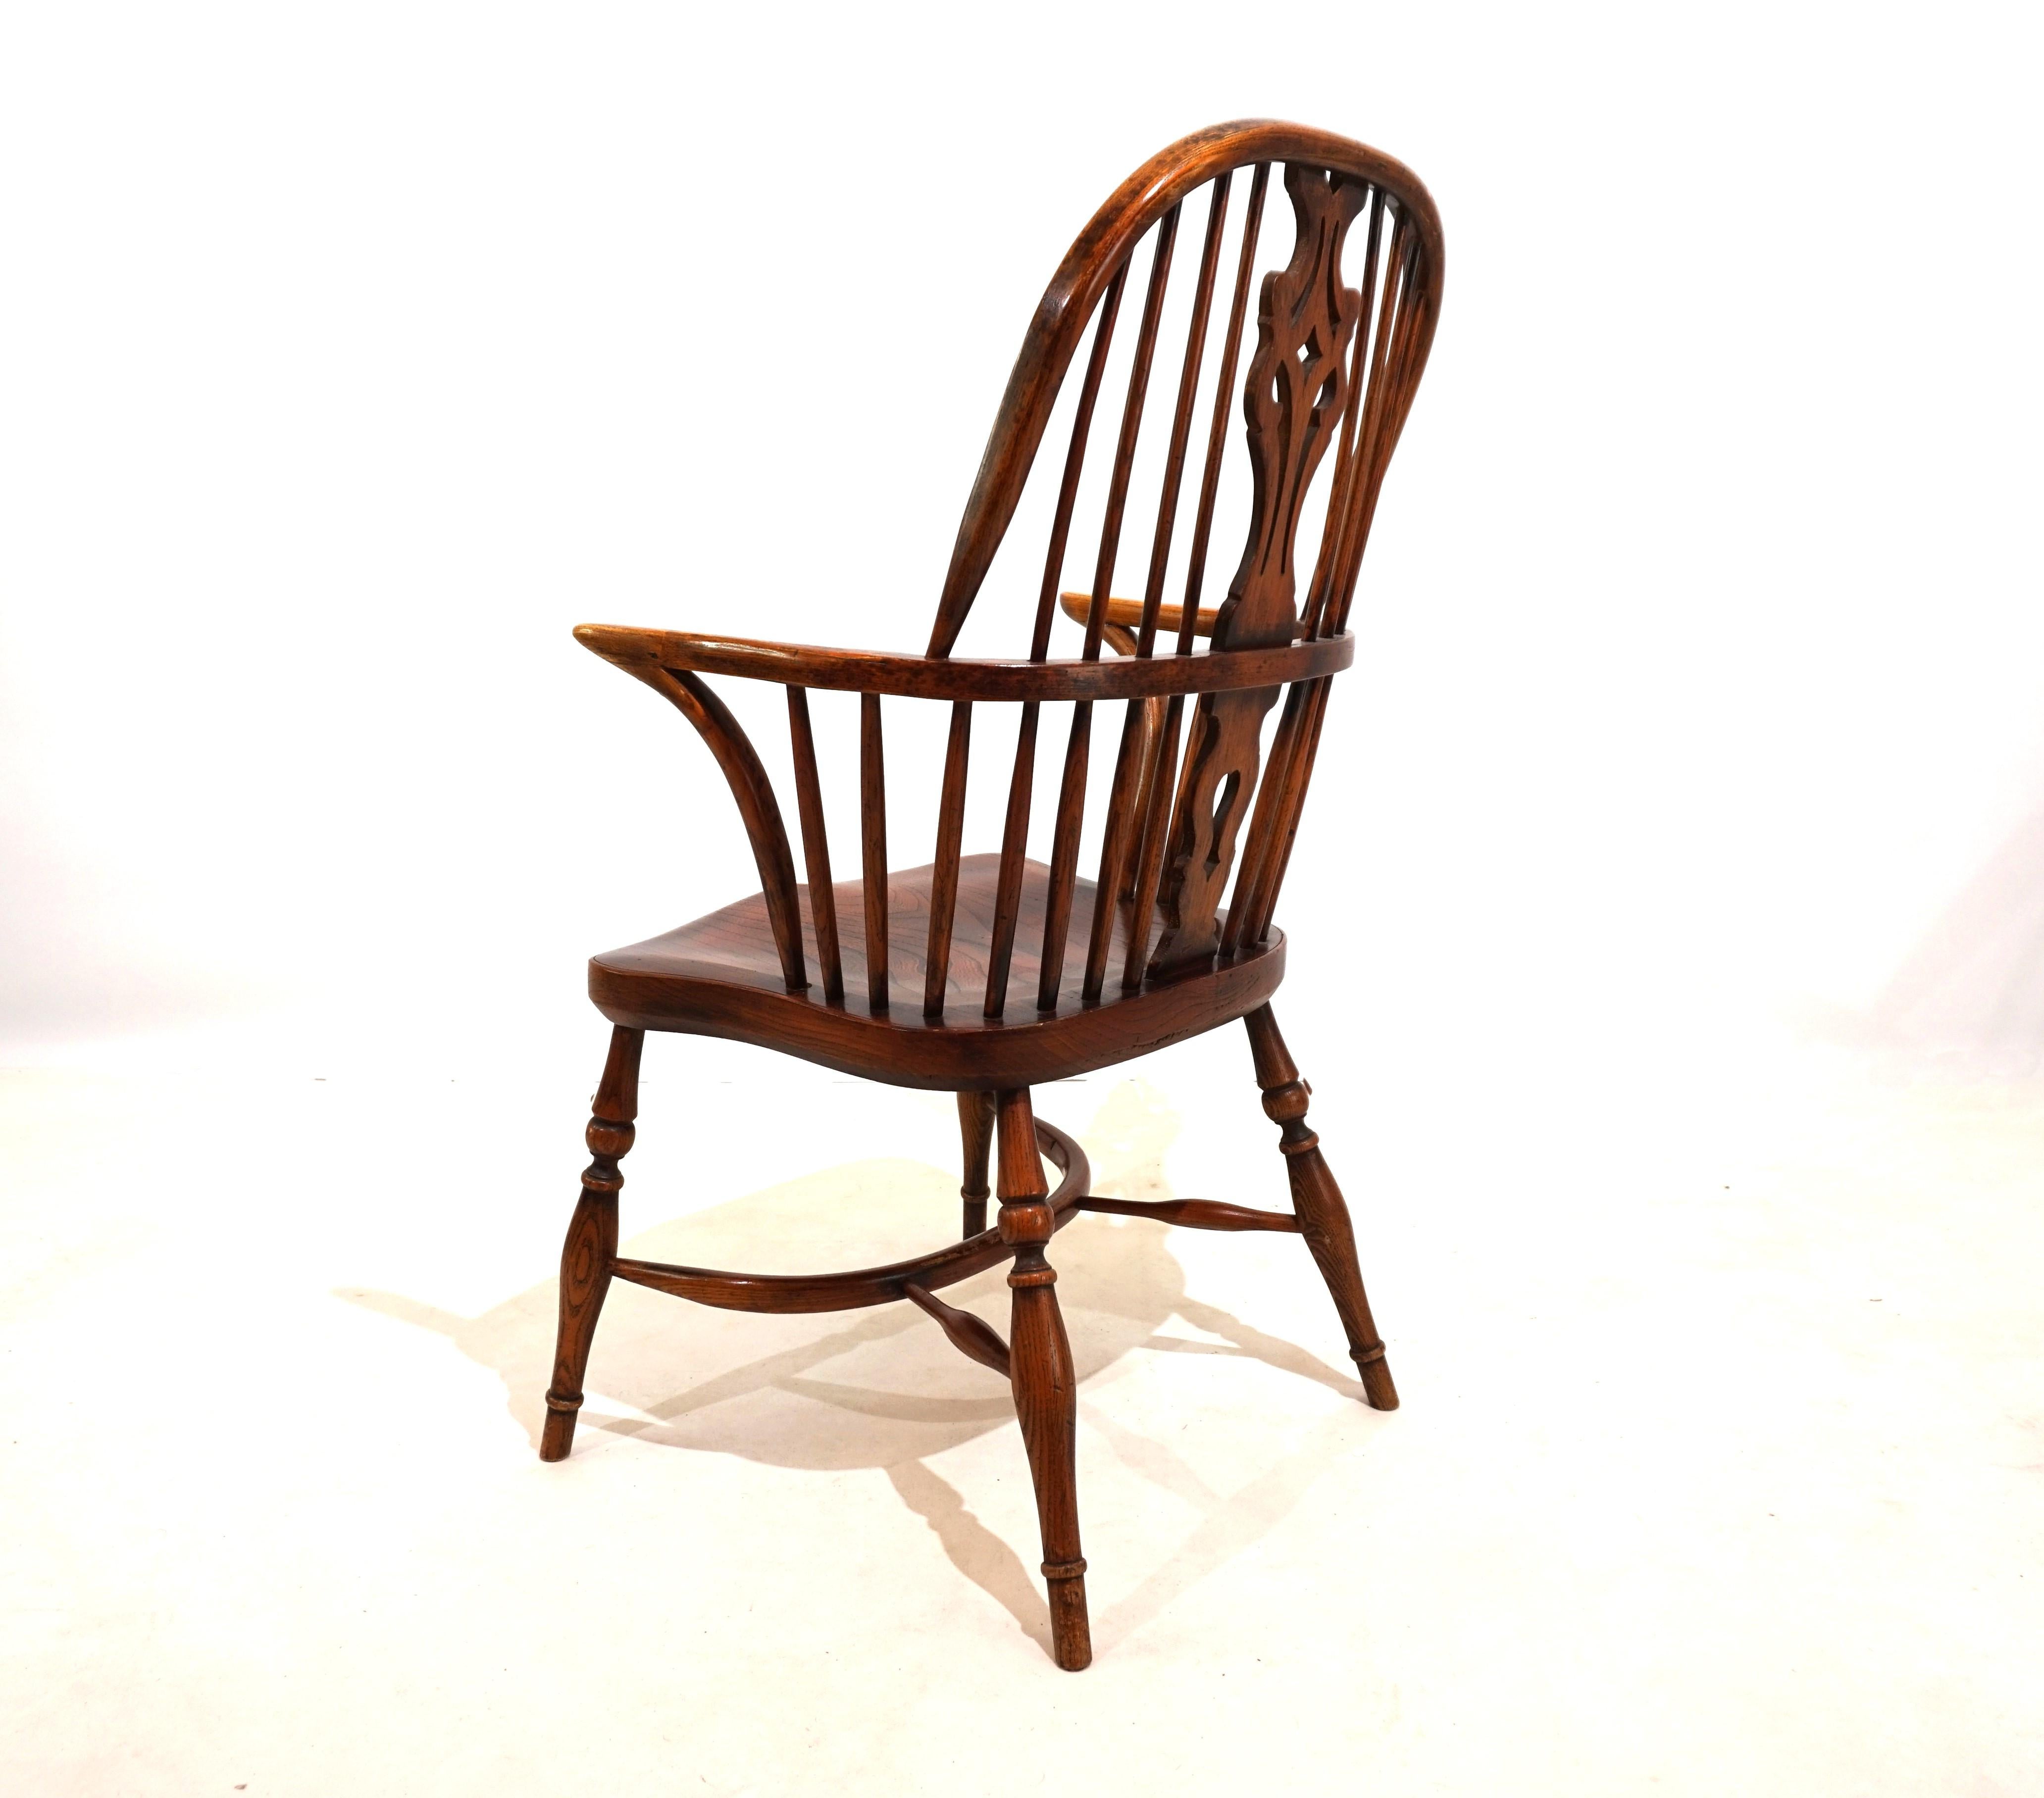 Cette chaise Windsor en version fauteuil avec dossier est en très bon état avec une fantastique patine d'âge. L'élément de conception du dossier et les entretoises simples et délicates confèrent à la chaise une apparence exclusive. Au fil des